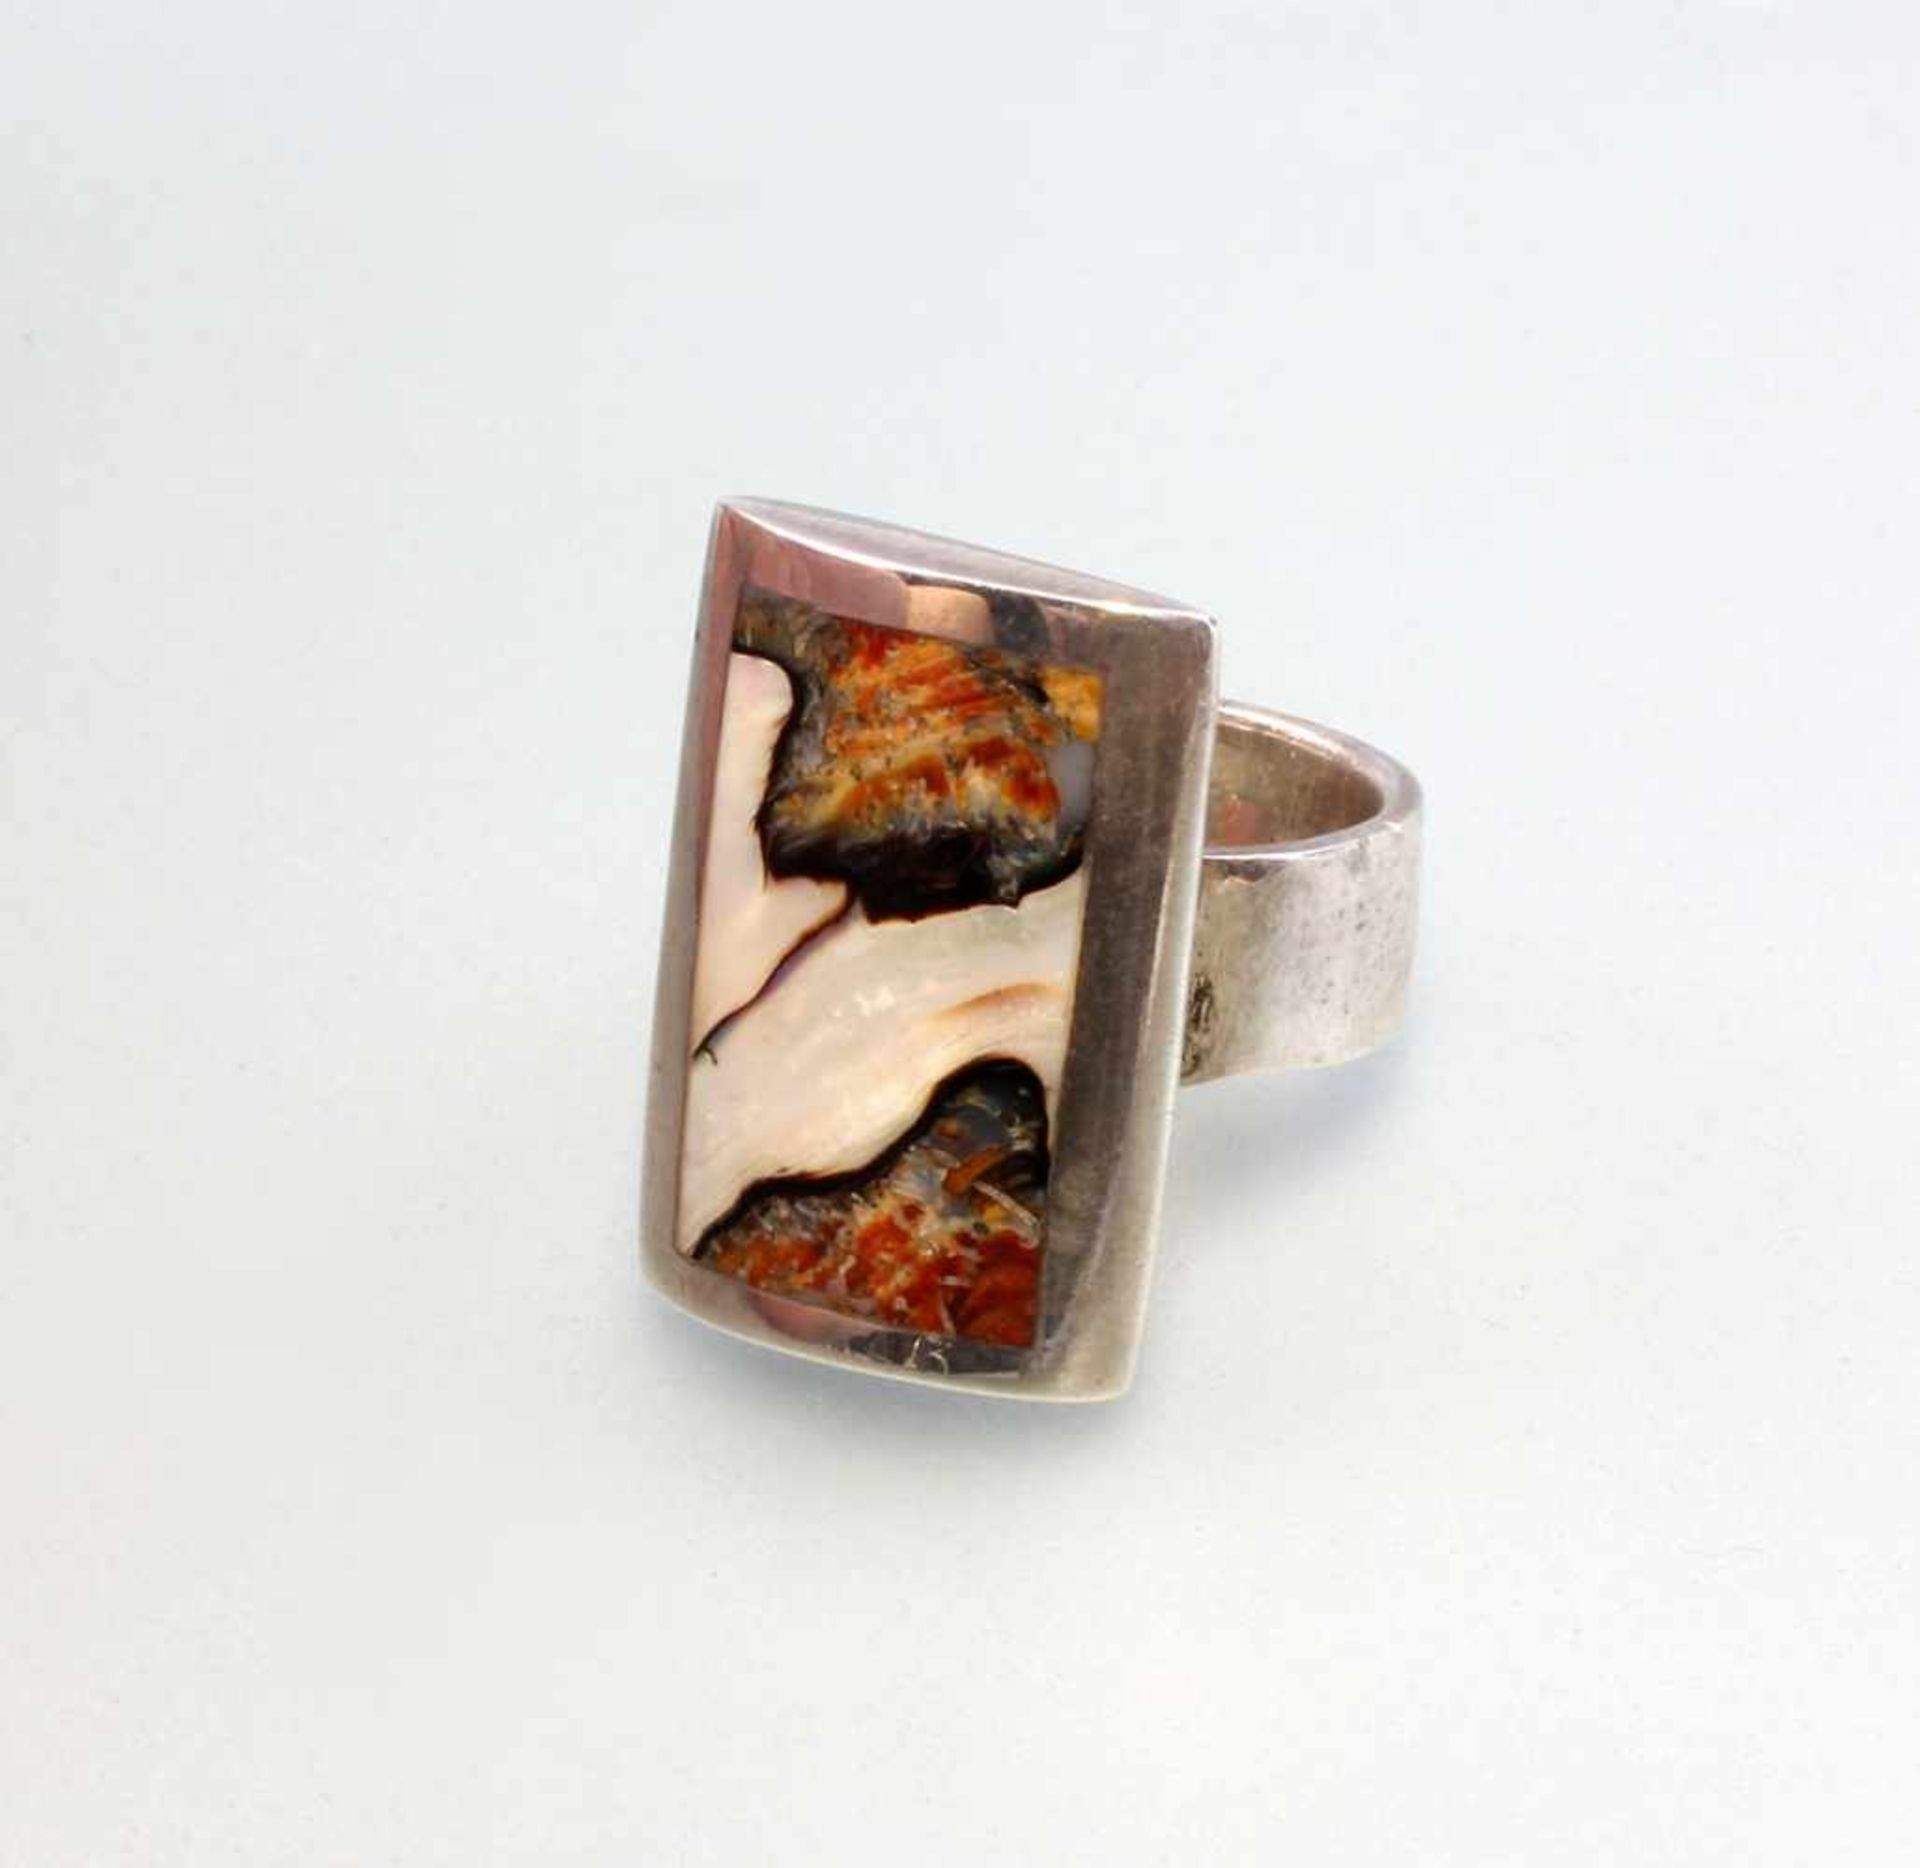 Ring perlmutt-braun . 925er Silber, 14,34 g, rechteckiger Ringkopf mit eingelassener, braun-